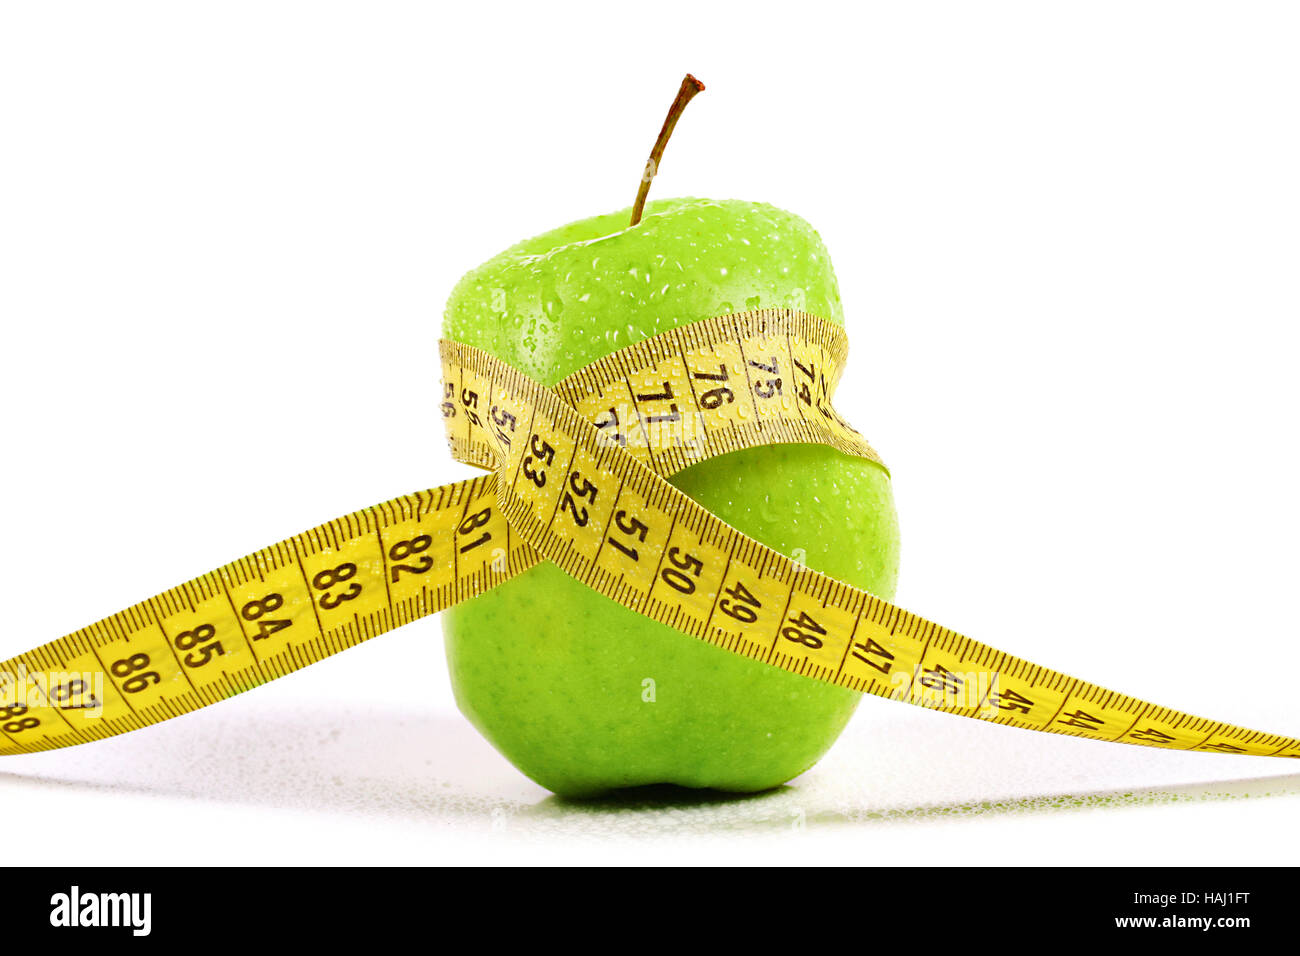 Las dietas, perder peso concepto. Apple con cinta métrica Foto de stock